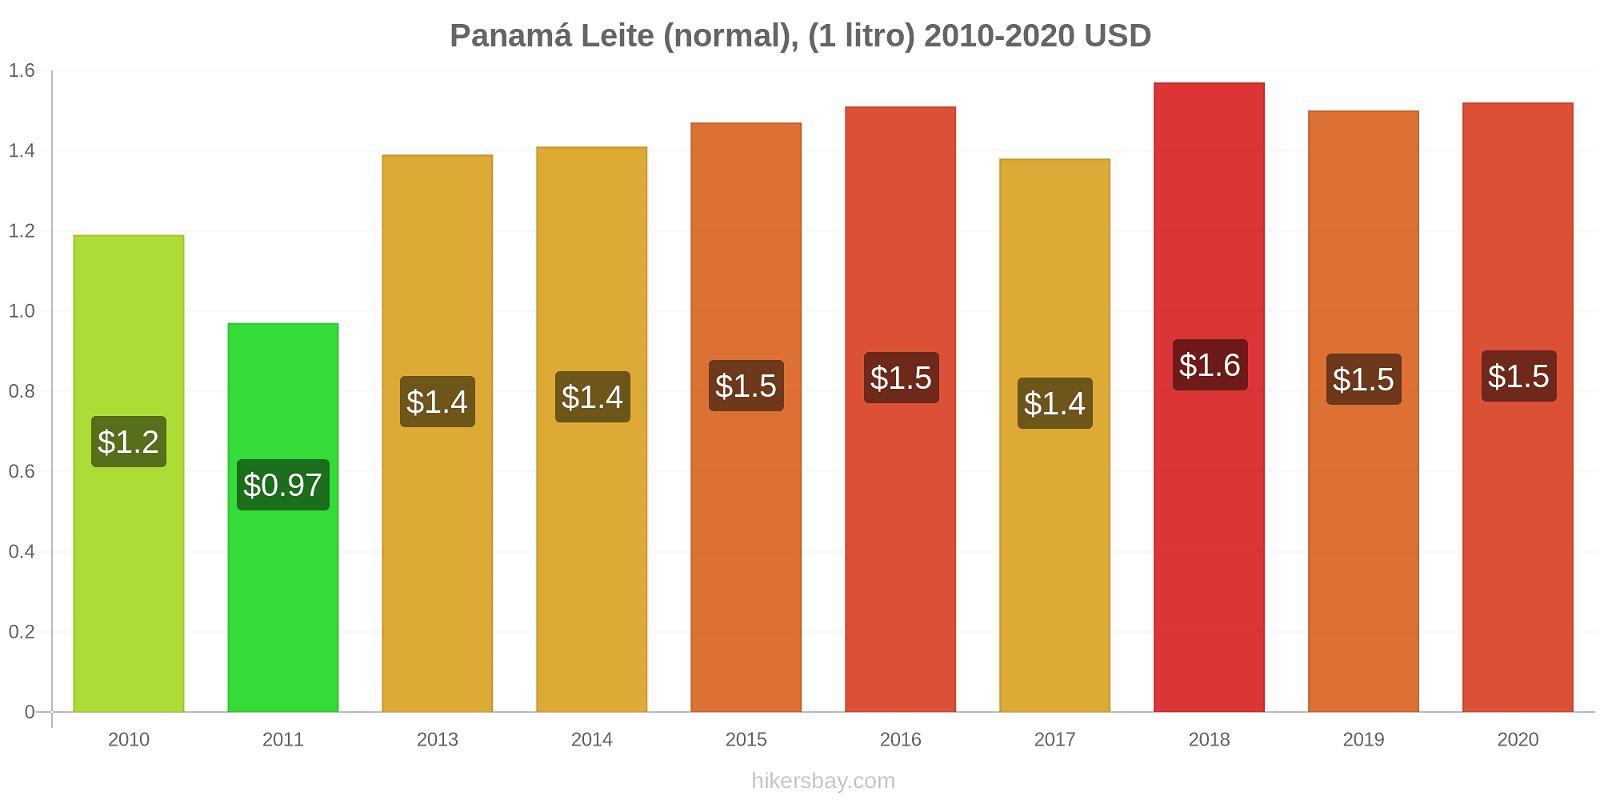 Panamá variação de preço (Regular), leite (1 litro) hikersbay.com